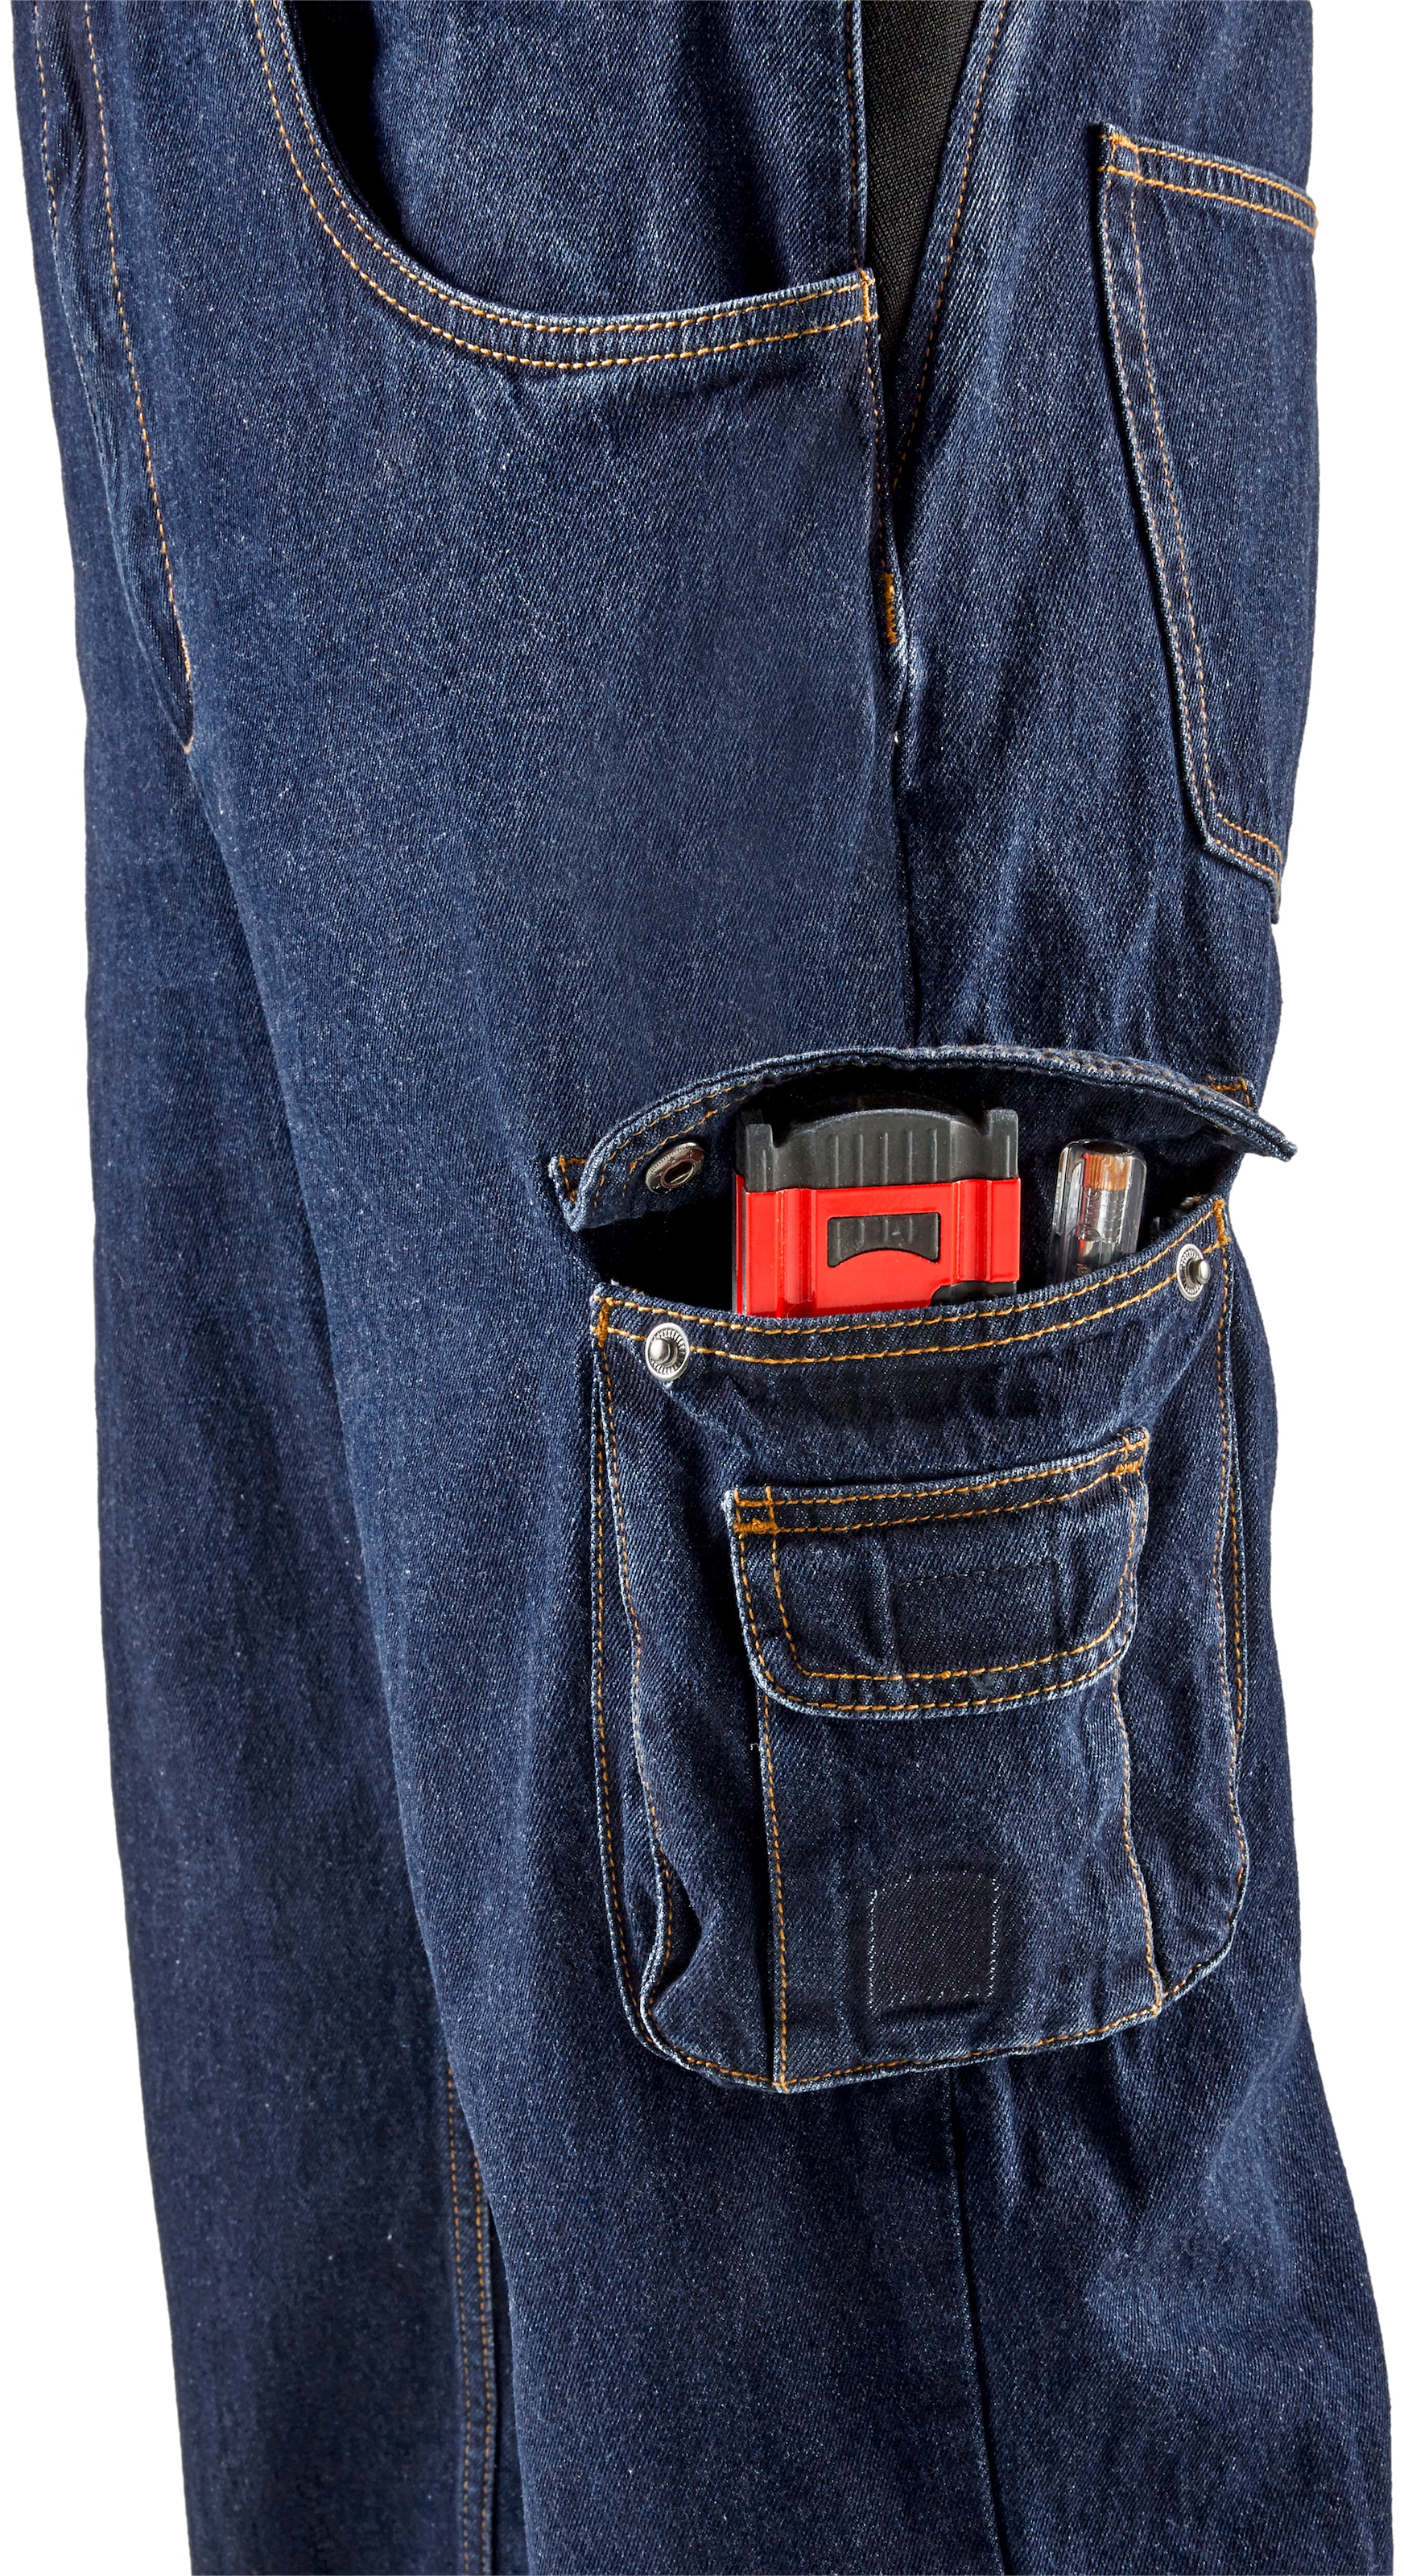 Northern Country Latzhose »Worker Jeans«, (aus 100% Baumwolle, robuster Jeansstoff, comfort fit), mit dehnbarem Bund, 11 Taschen, strapazierfähig und langlebig